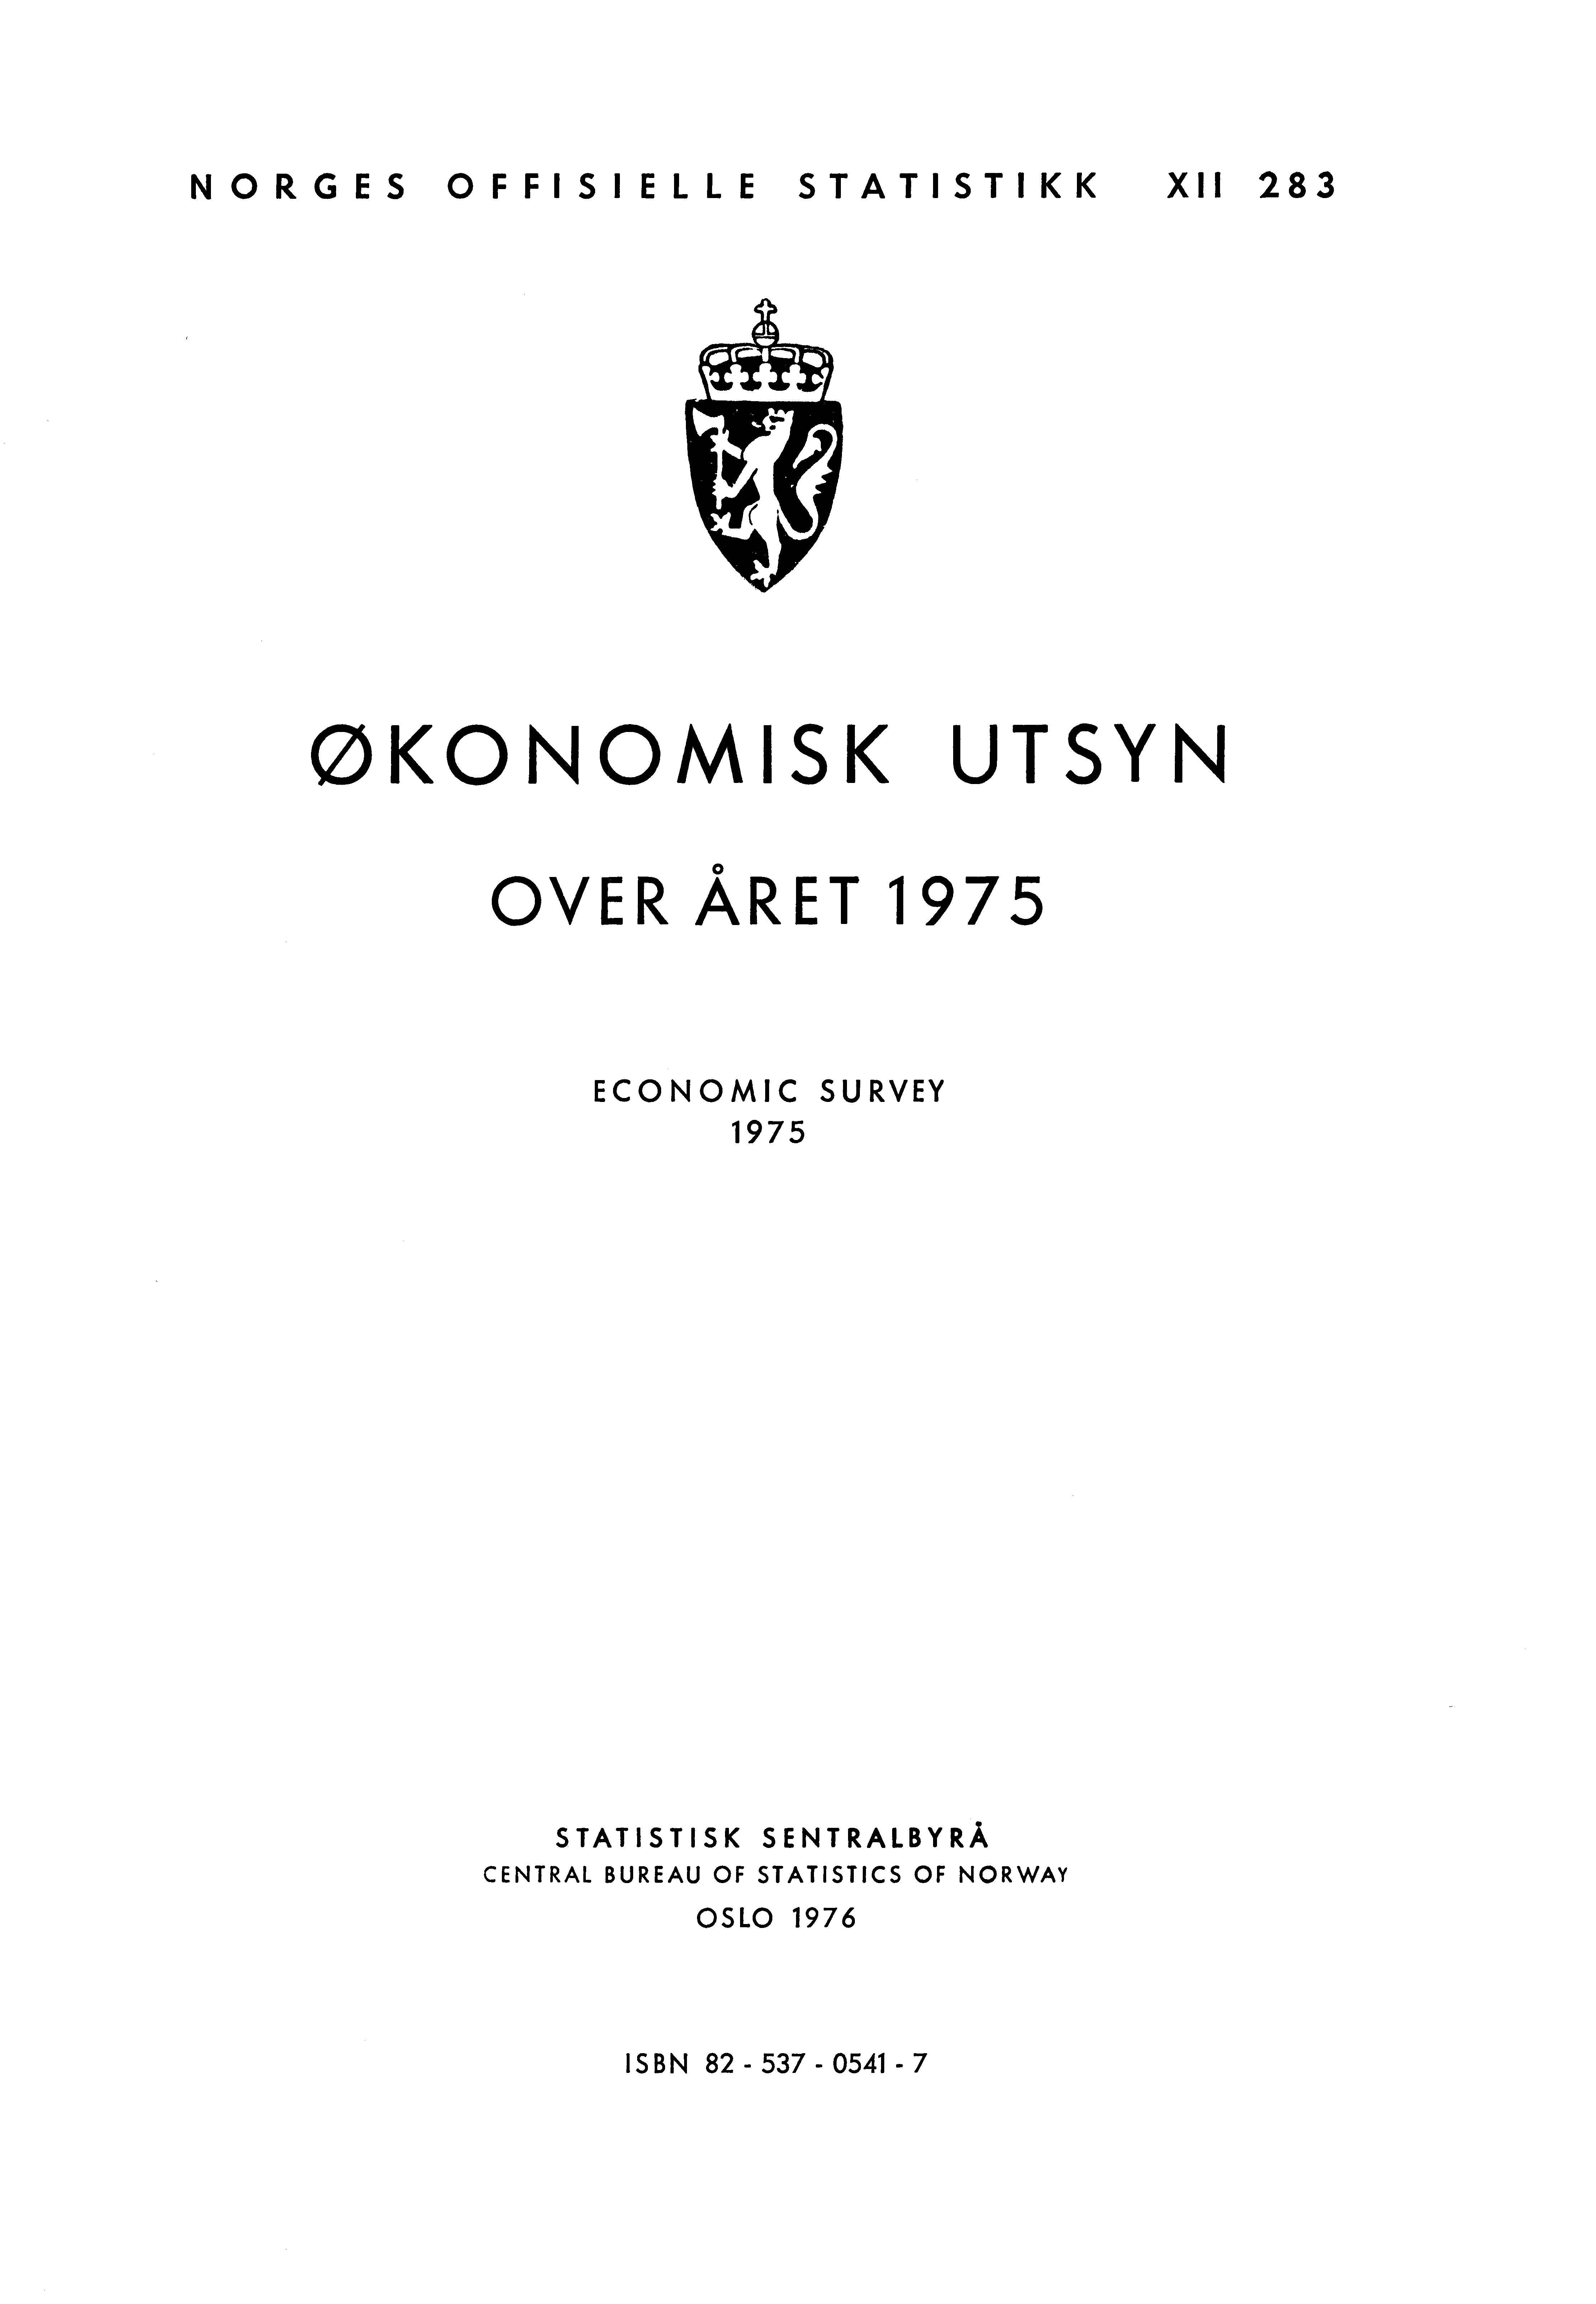 NORGES OFFISIELLE STATISTIKK XII 283 ØKONOMISK UTSYN OVER ÅRET 1975 ECONOMIC SURVEY 1975